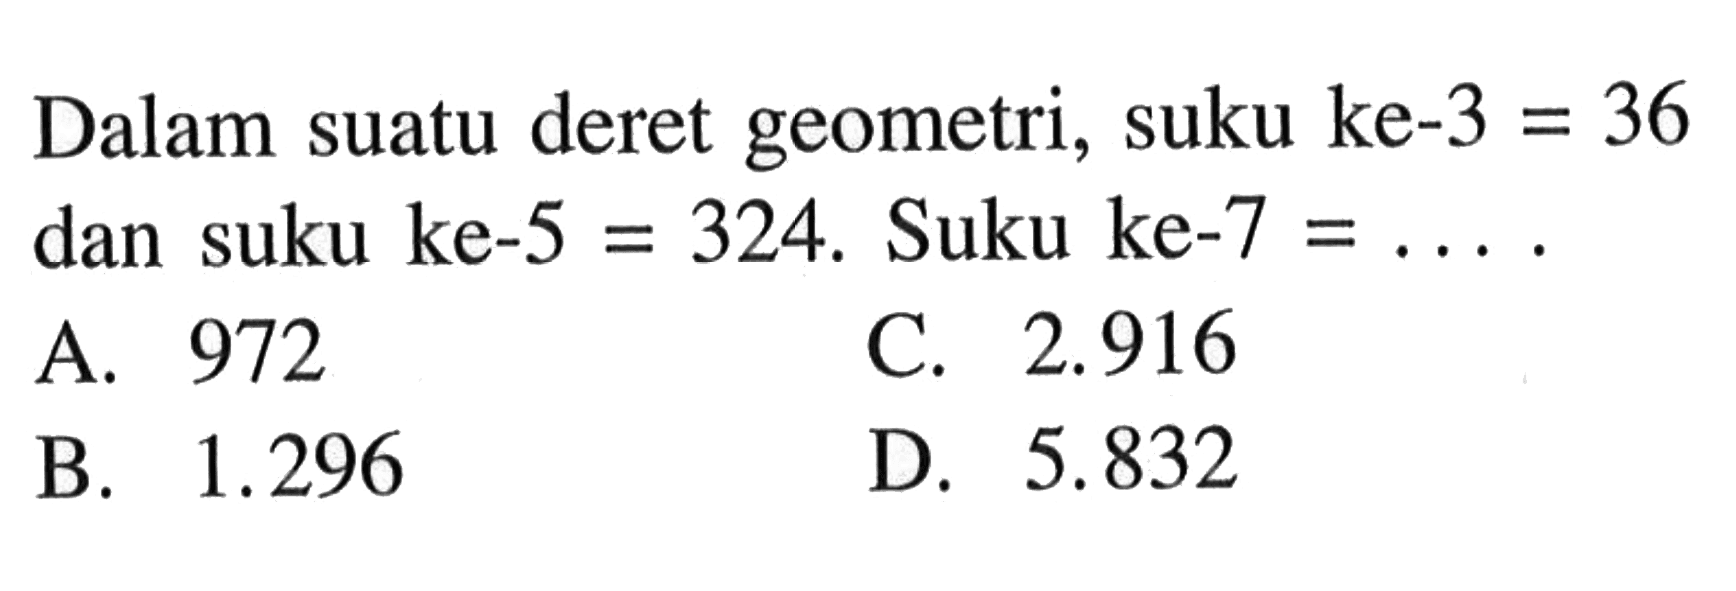 Dalam suatu deret geometri, suku ke-3 = 36 dan suku ke-5 = 324. Suku ke-7 = ...